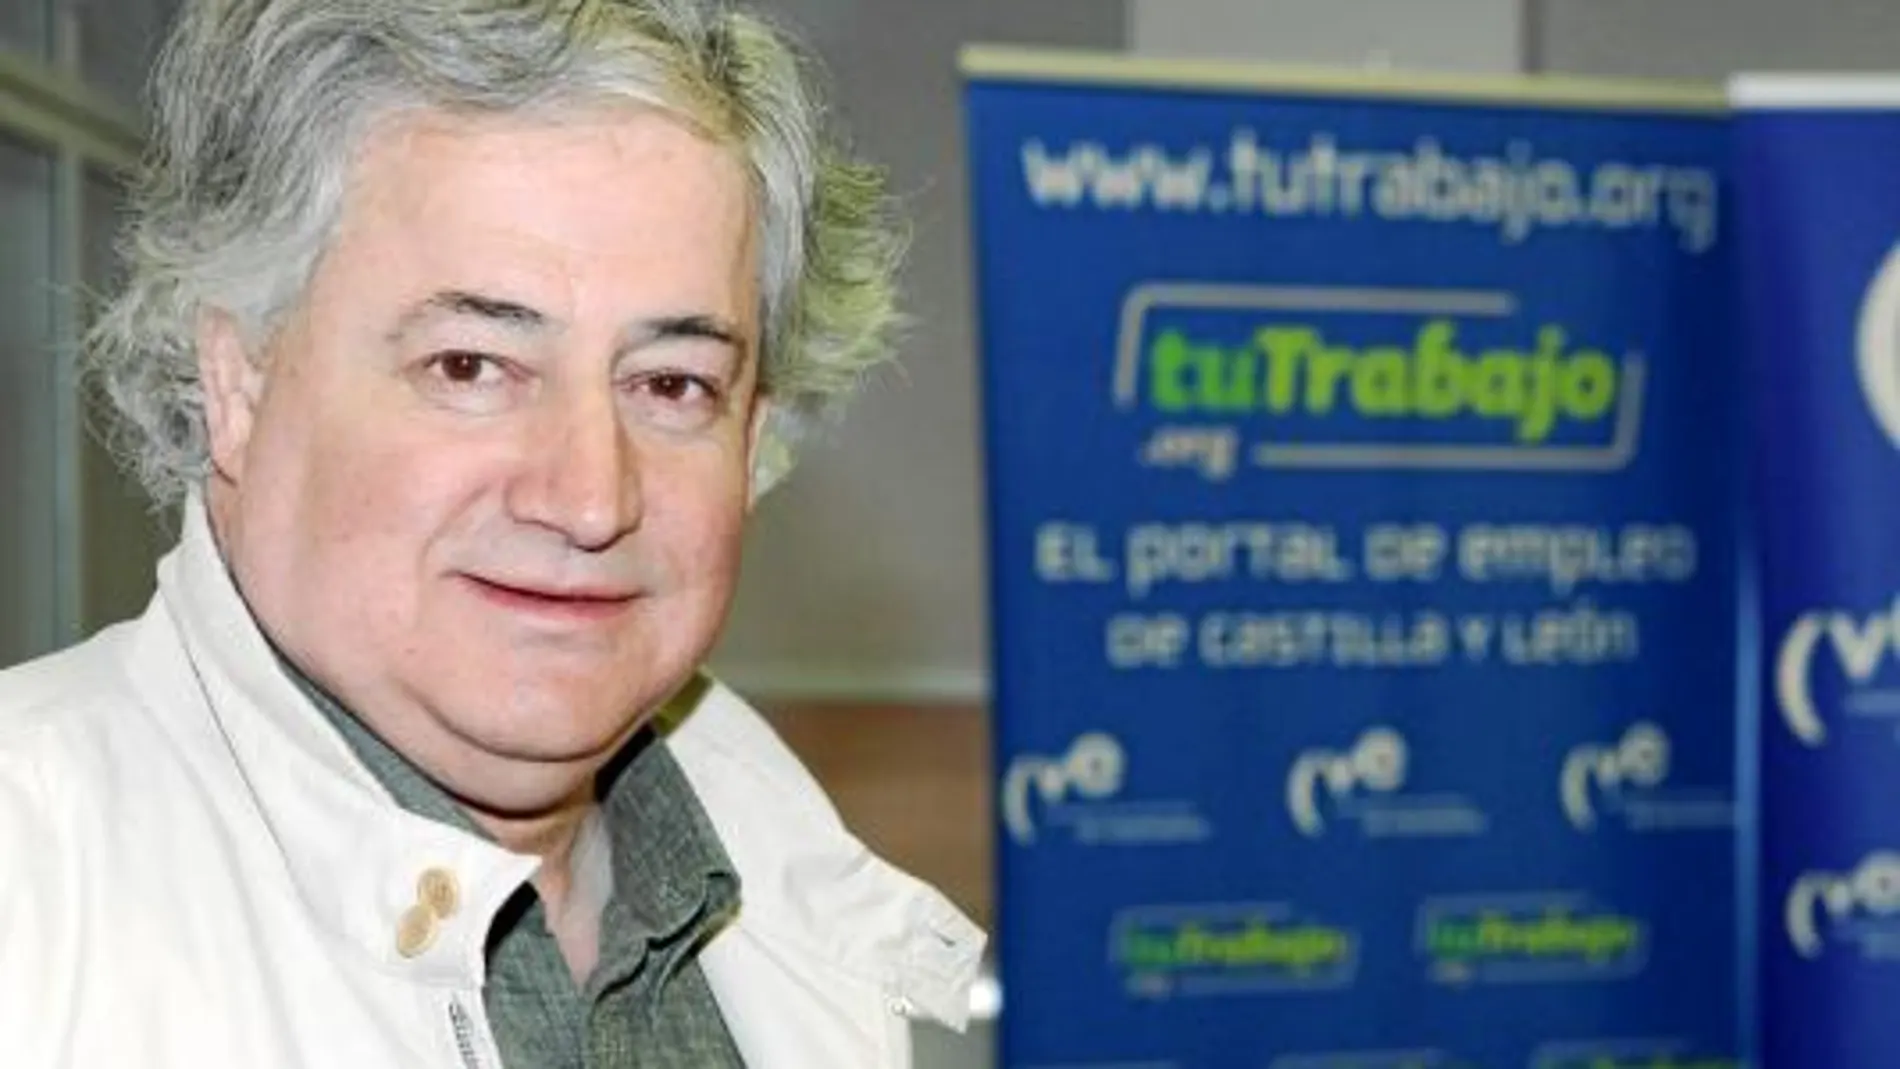 El presidente de los empresarios de Valladolid, Manuel Soler